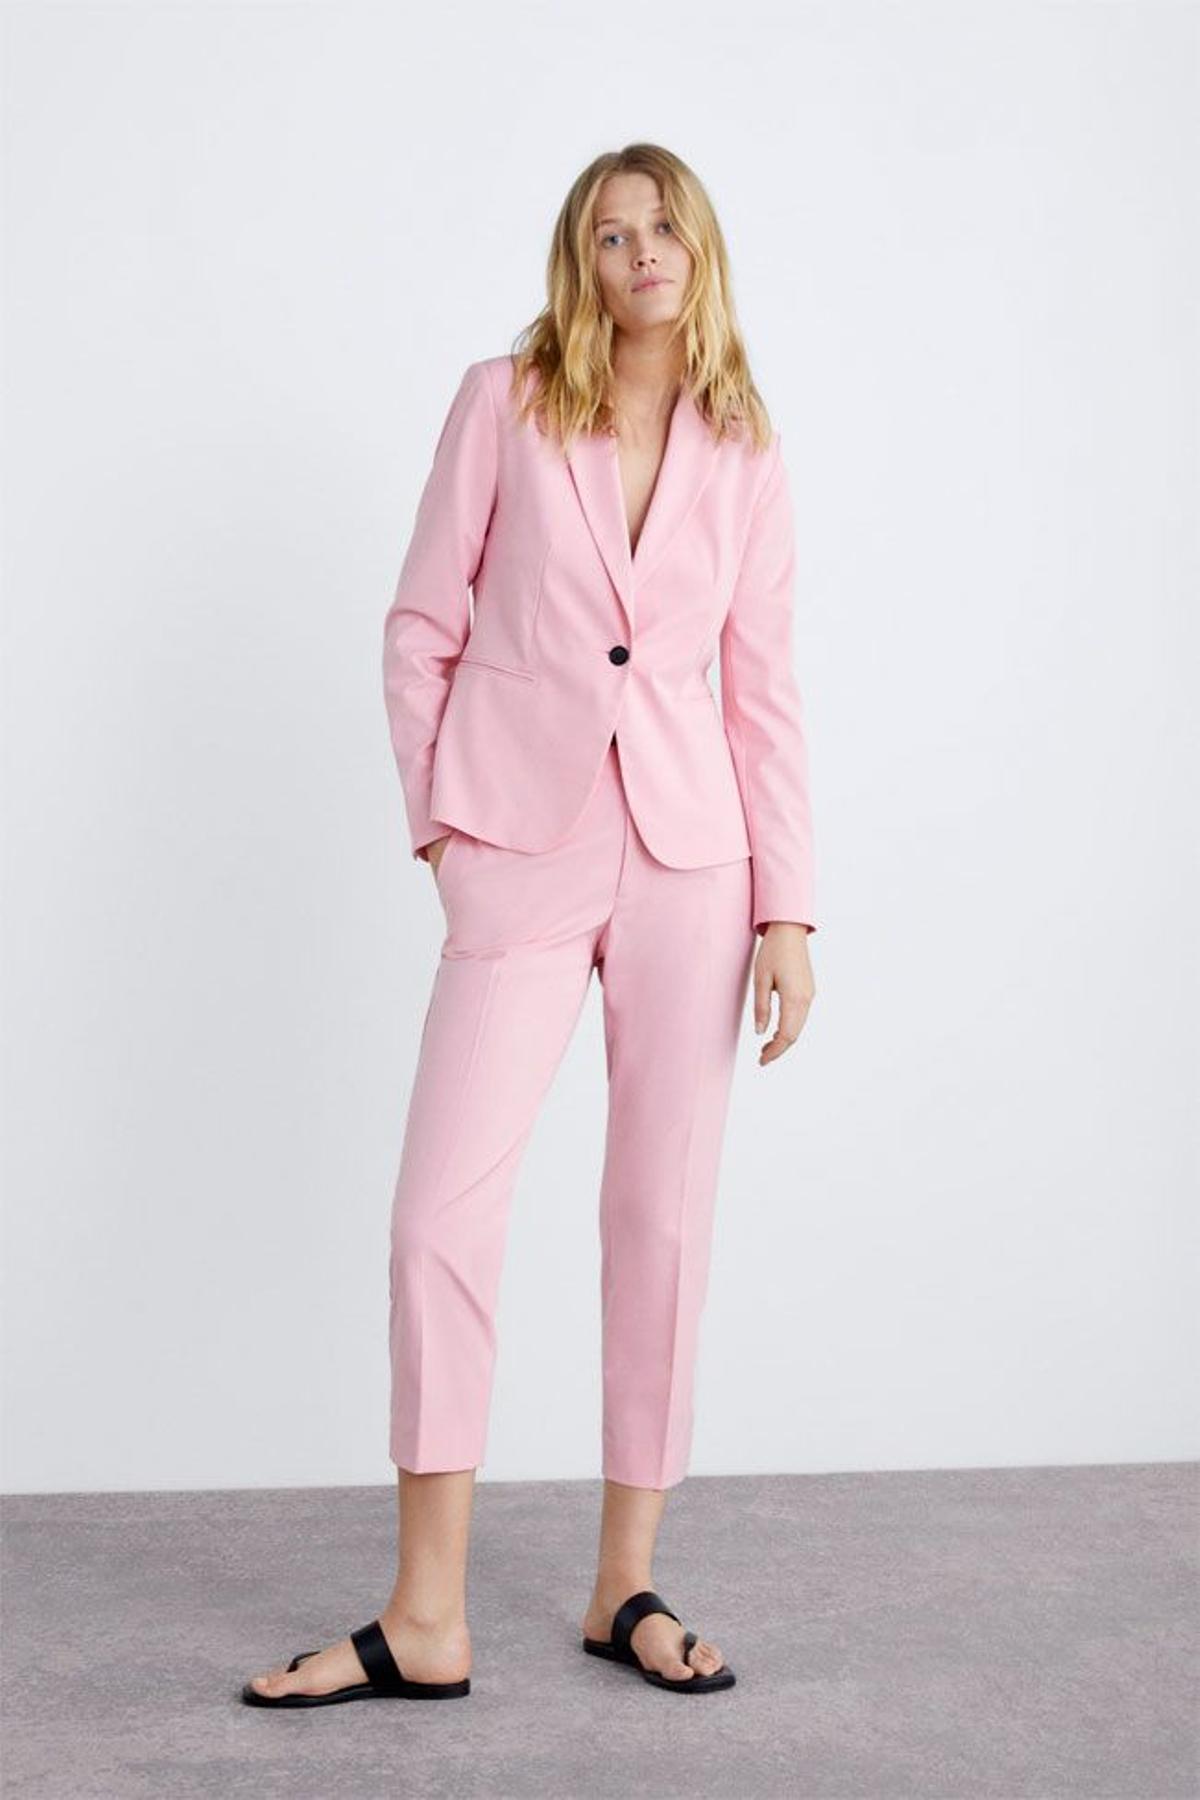 Primavera con mi traje rosa de Zara - Paperblog